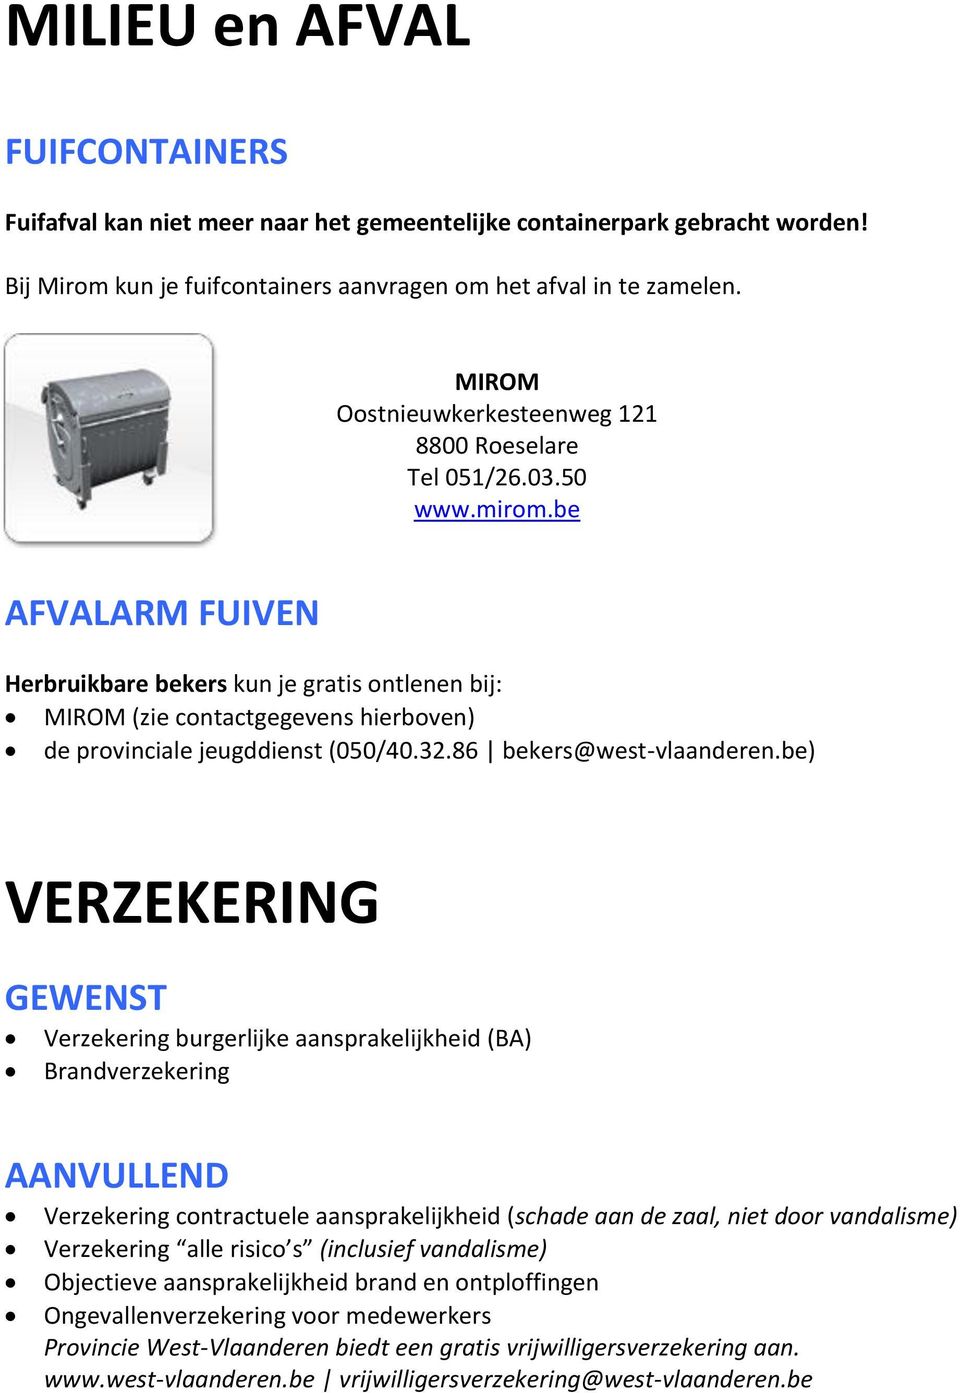 be AFVALARM FUIVEN Herbruikbare bekers kun je gratis ontlenen bij: MIROM (zie contactgegevens hierboven) de provinciale jeugddienst (050/40.32.86 bekers@west-vlaanderen.